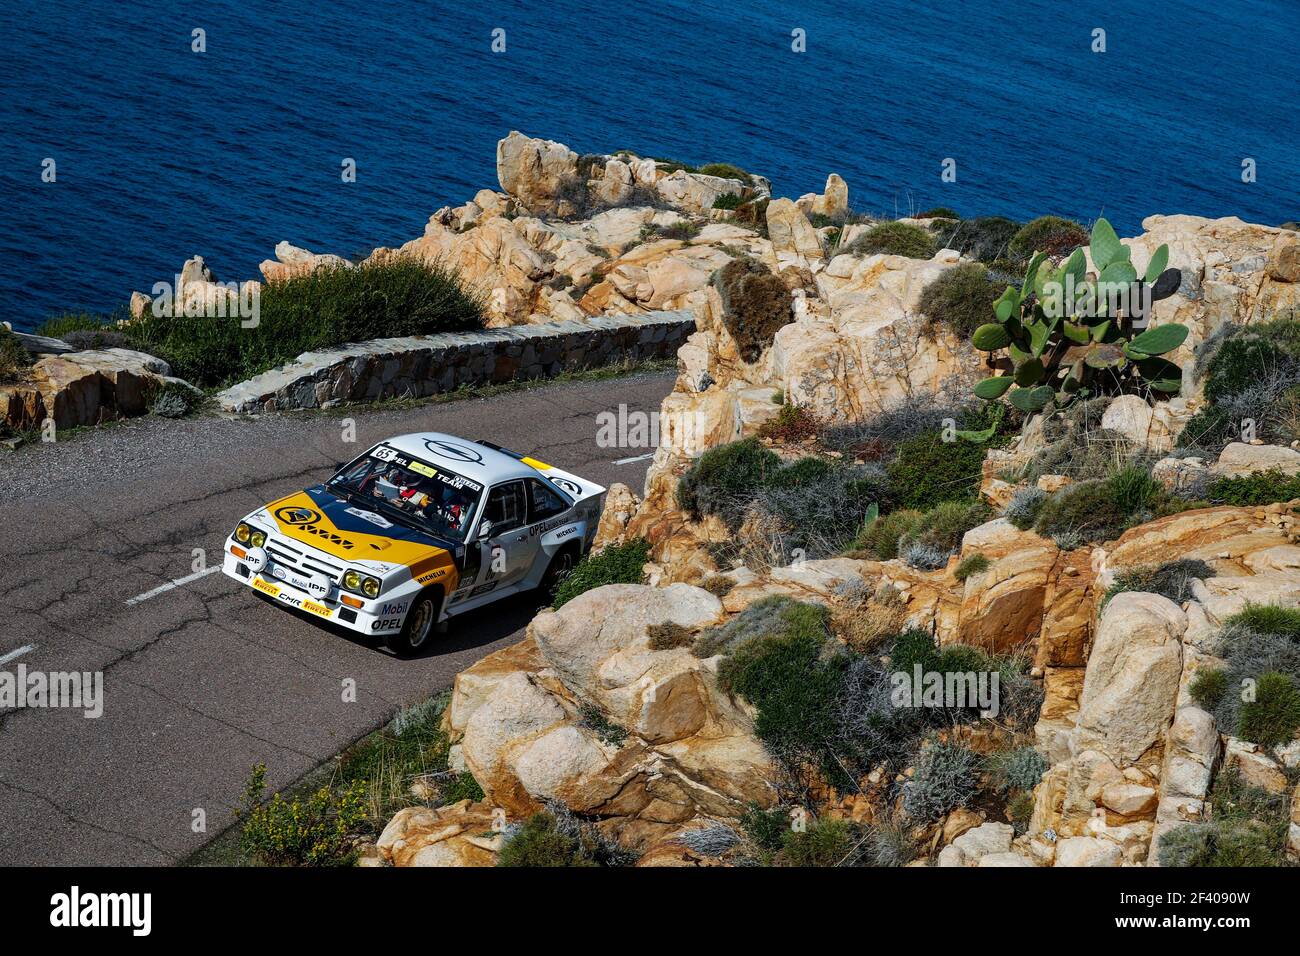 65 LAMIC José (fra), LAMIC Jean-Philipe (fra), Opel Manta 400, action pendant le Tour de Corse historique 2018 du 8 au 13 octobre en Corse, France - photo Florent Gooden / DPPI Banque D'Images